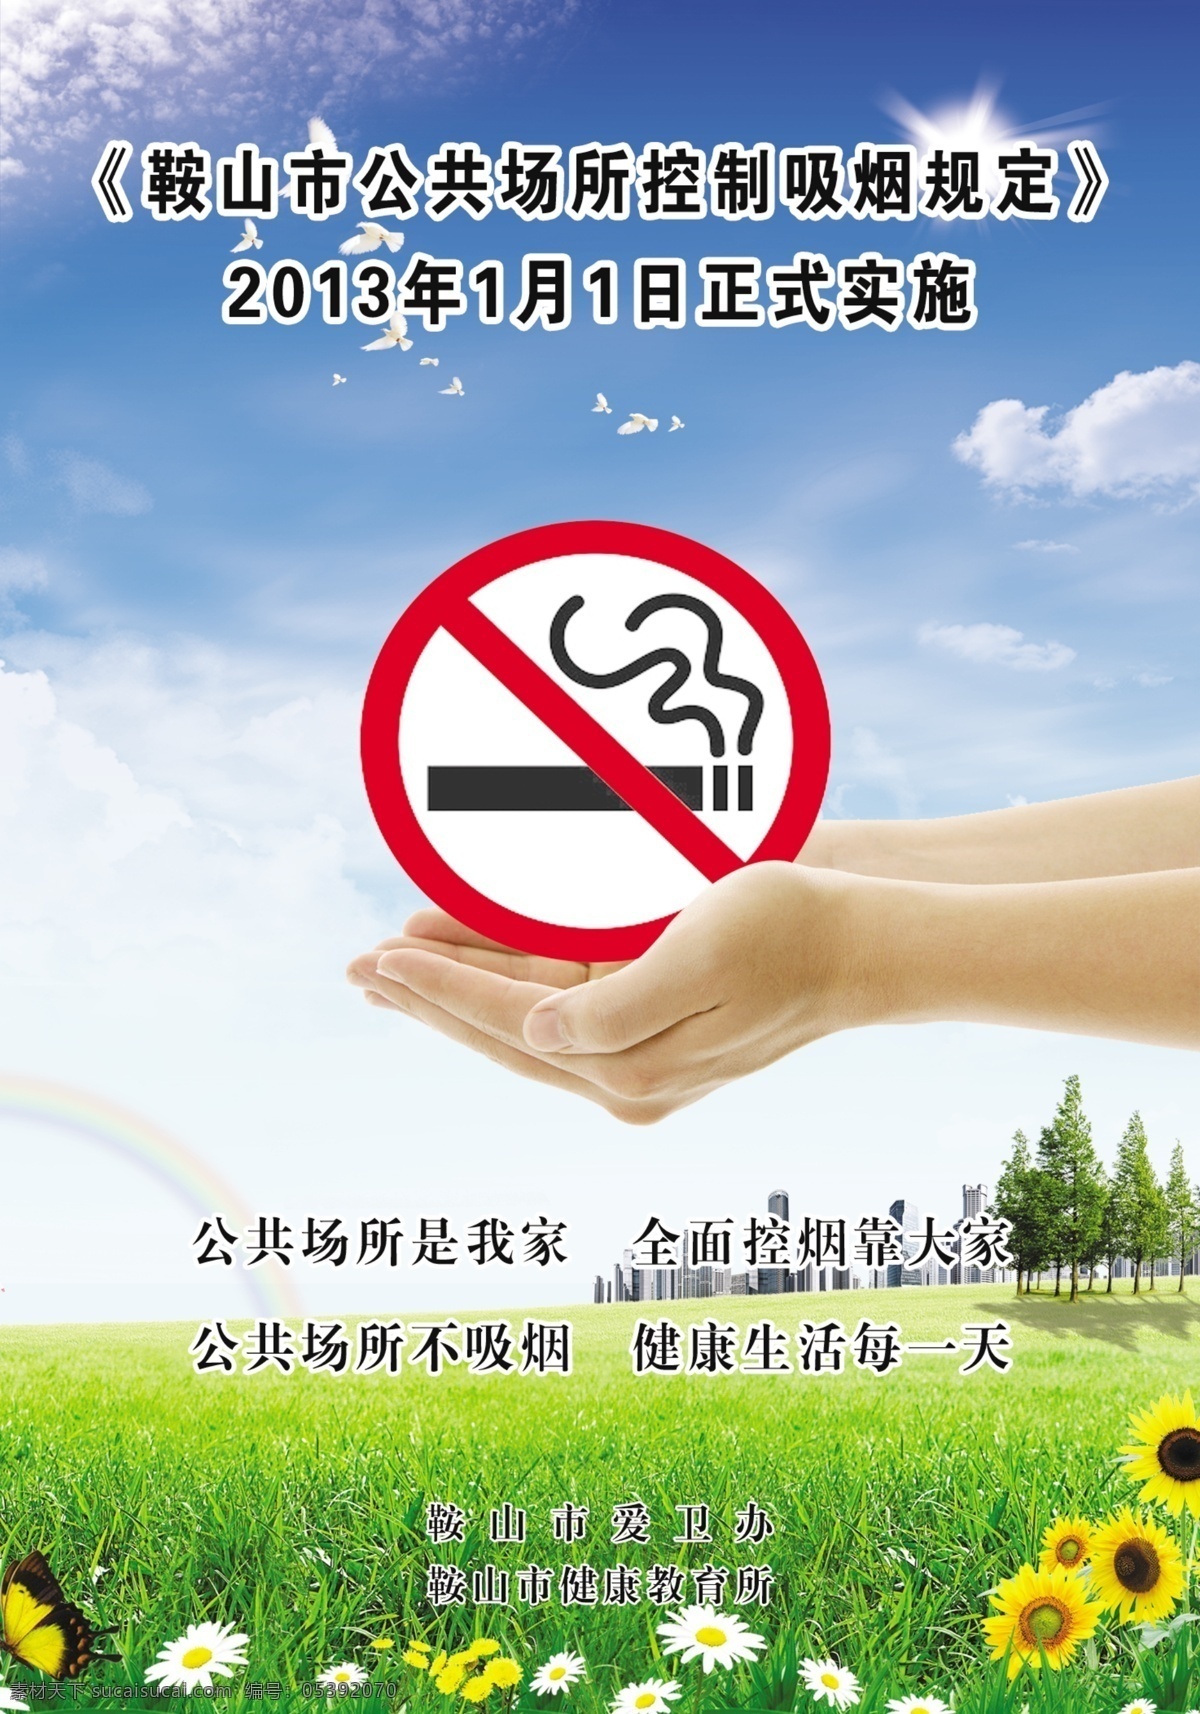 禁止吸烟海报 禁止吸烟 禁烟令 不吸烟 控制吸烟规定 禁烟 广告设计模板 源文件